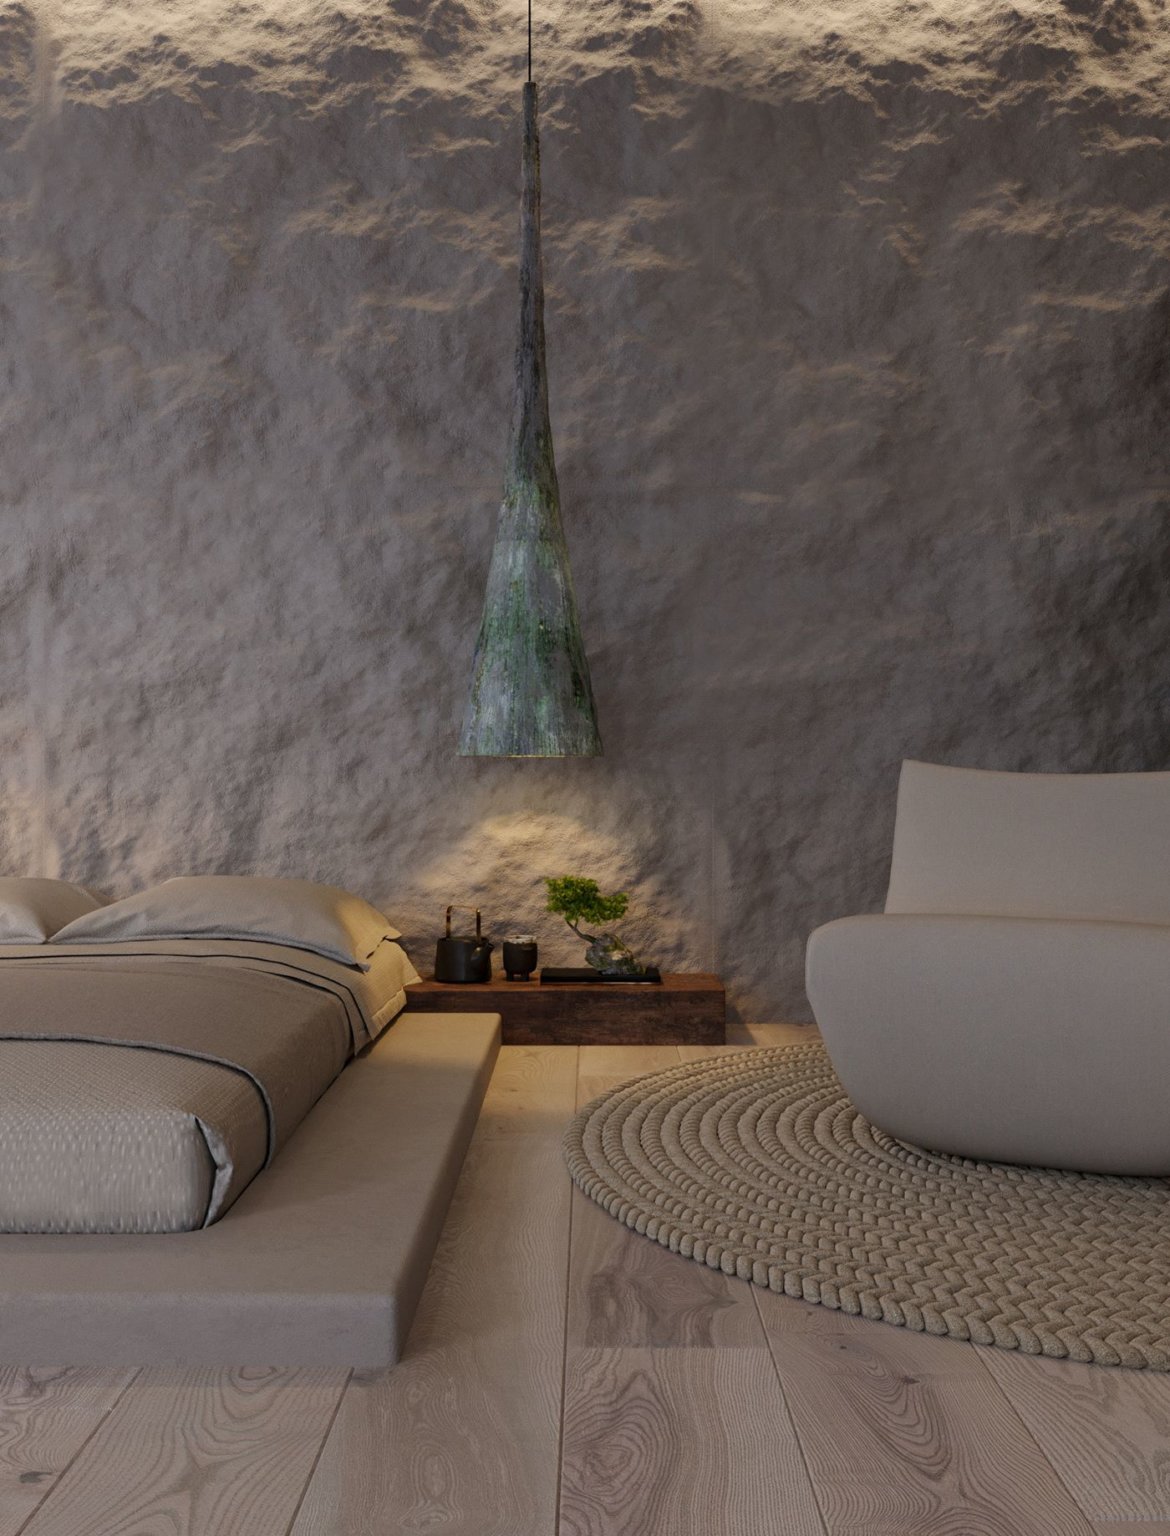 hình ảnh phòng ngủ trong căn hộ Wabi-sabi với giường thấp, kệ gỗ đầu giường, đèn thả, chậu bonsai nhỏ, thảm tròn, ghế ngồi 